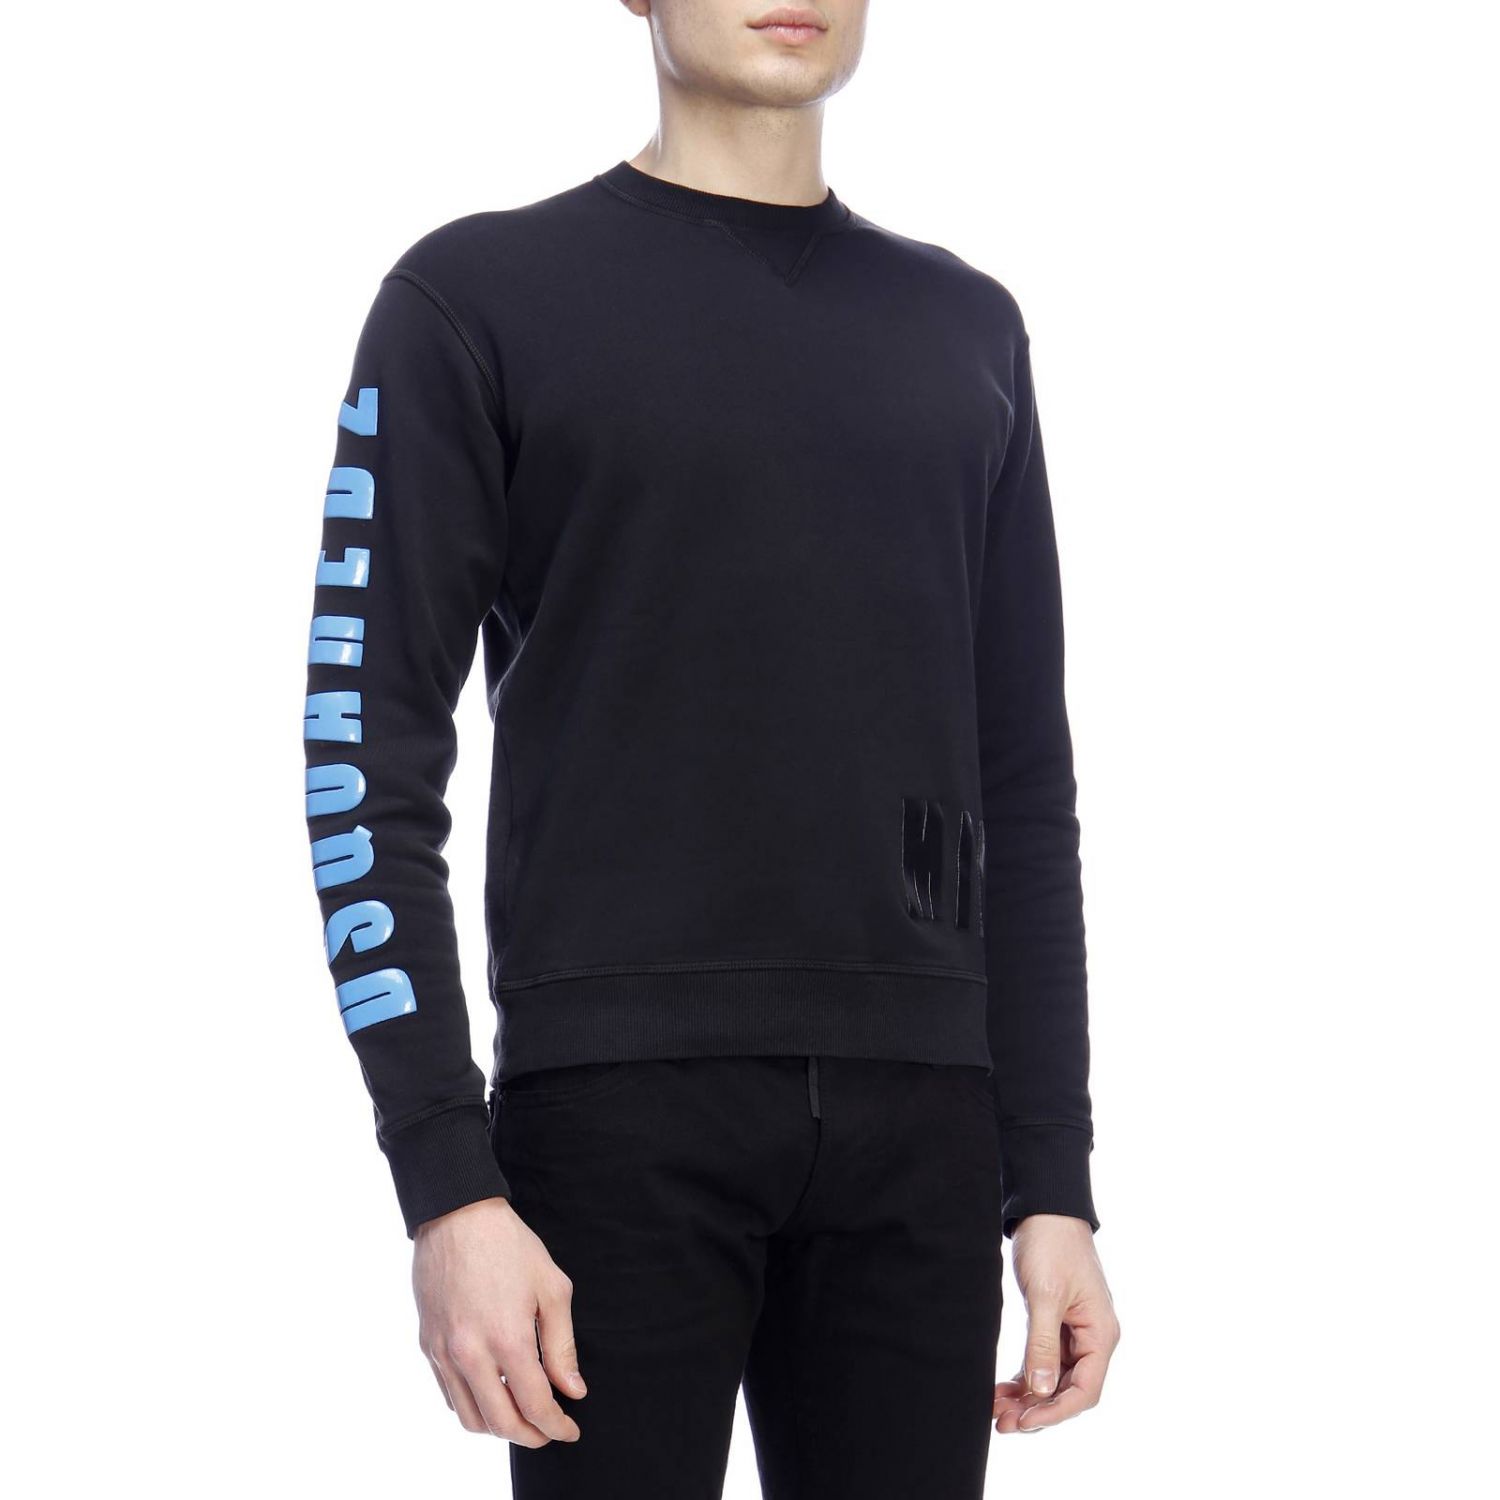 Dsquared2 Outlet: Sweatshirt men - Black | Sweatshirt Dsquared2 ...